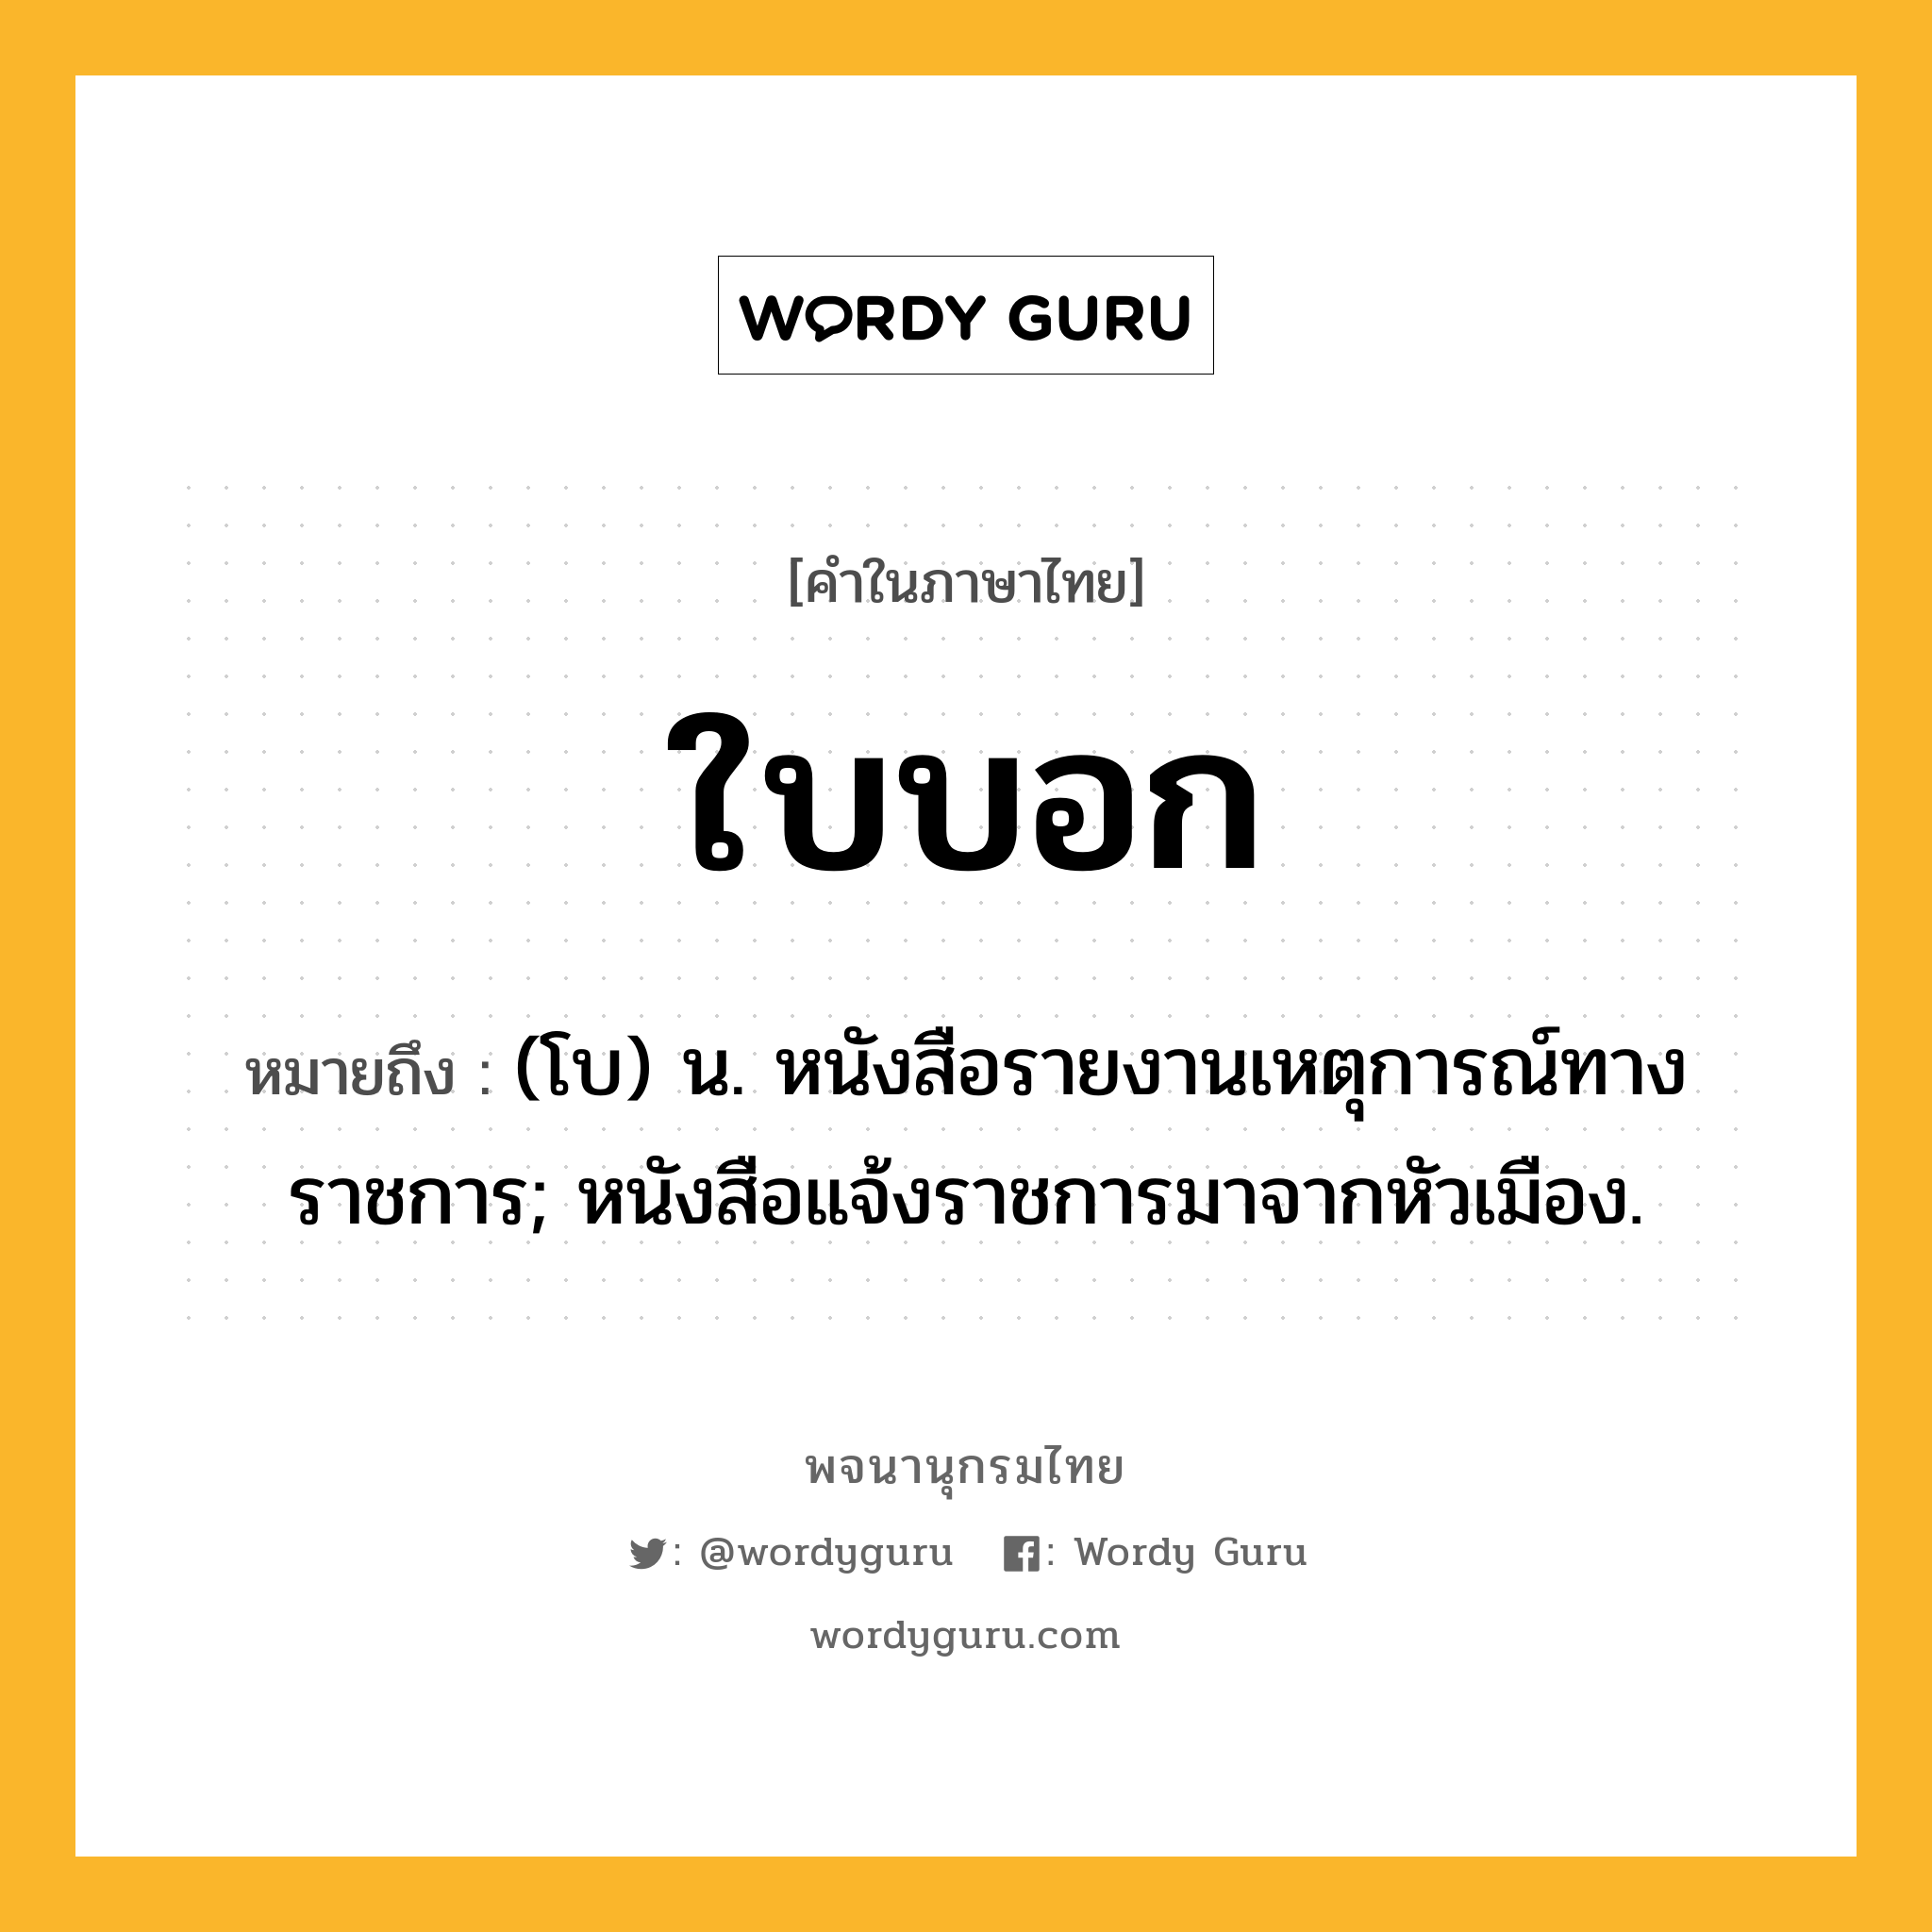 ใบบอก หมายถึงอะไร?, คำในภาษาไทย ใบบอก หมายถึง (โบ) น. หนังสือรายงานเหตุการณ์ทางราชการ; หนังสือแจ้งราชการมาจากหัวเมือง.